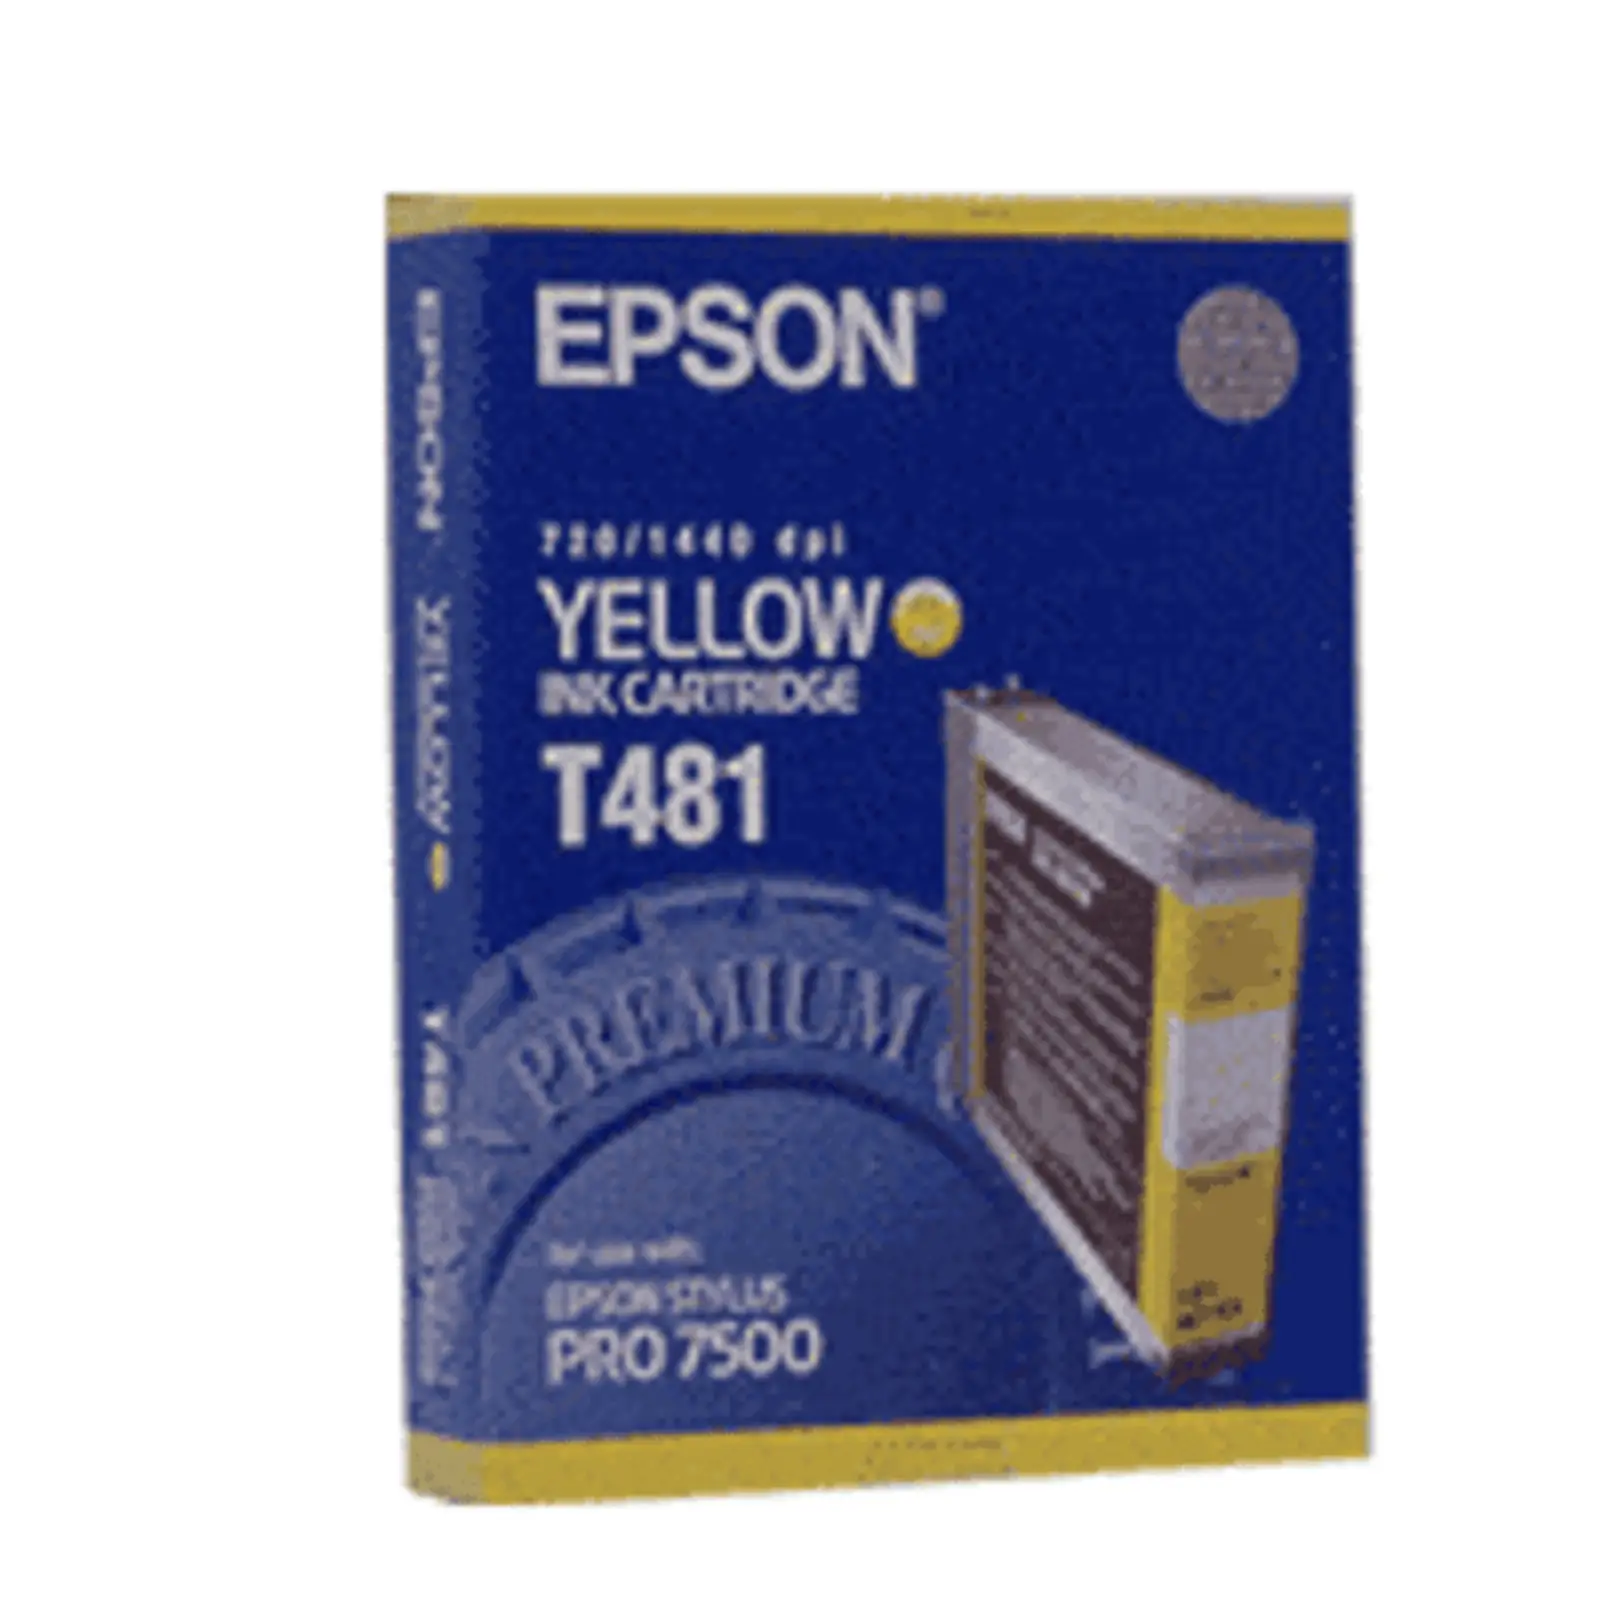 Epson T481 jaune Toner Original 